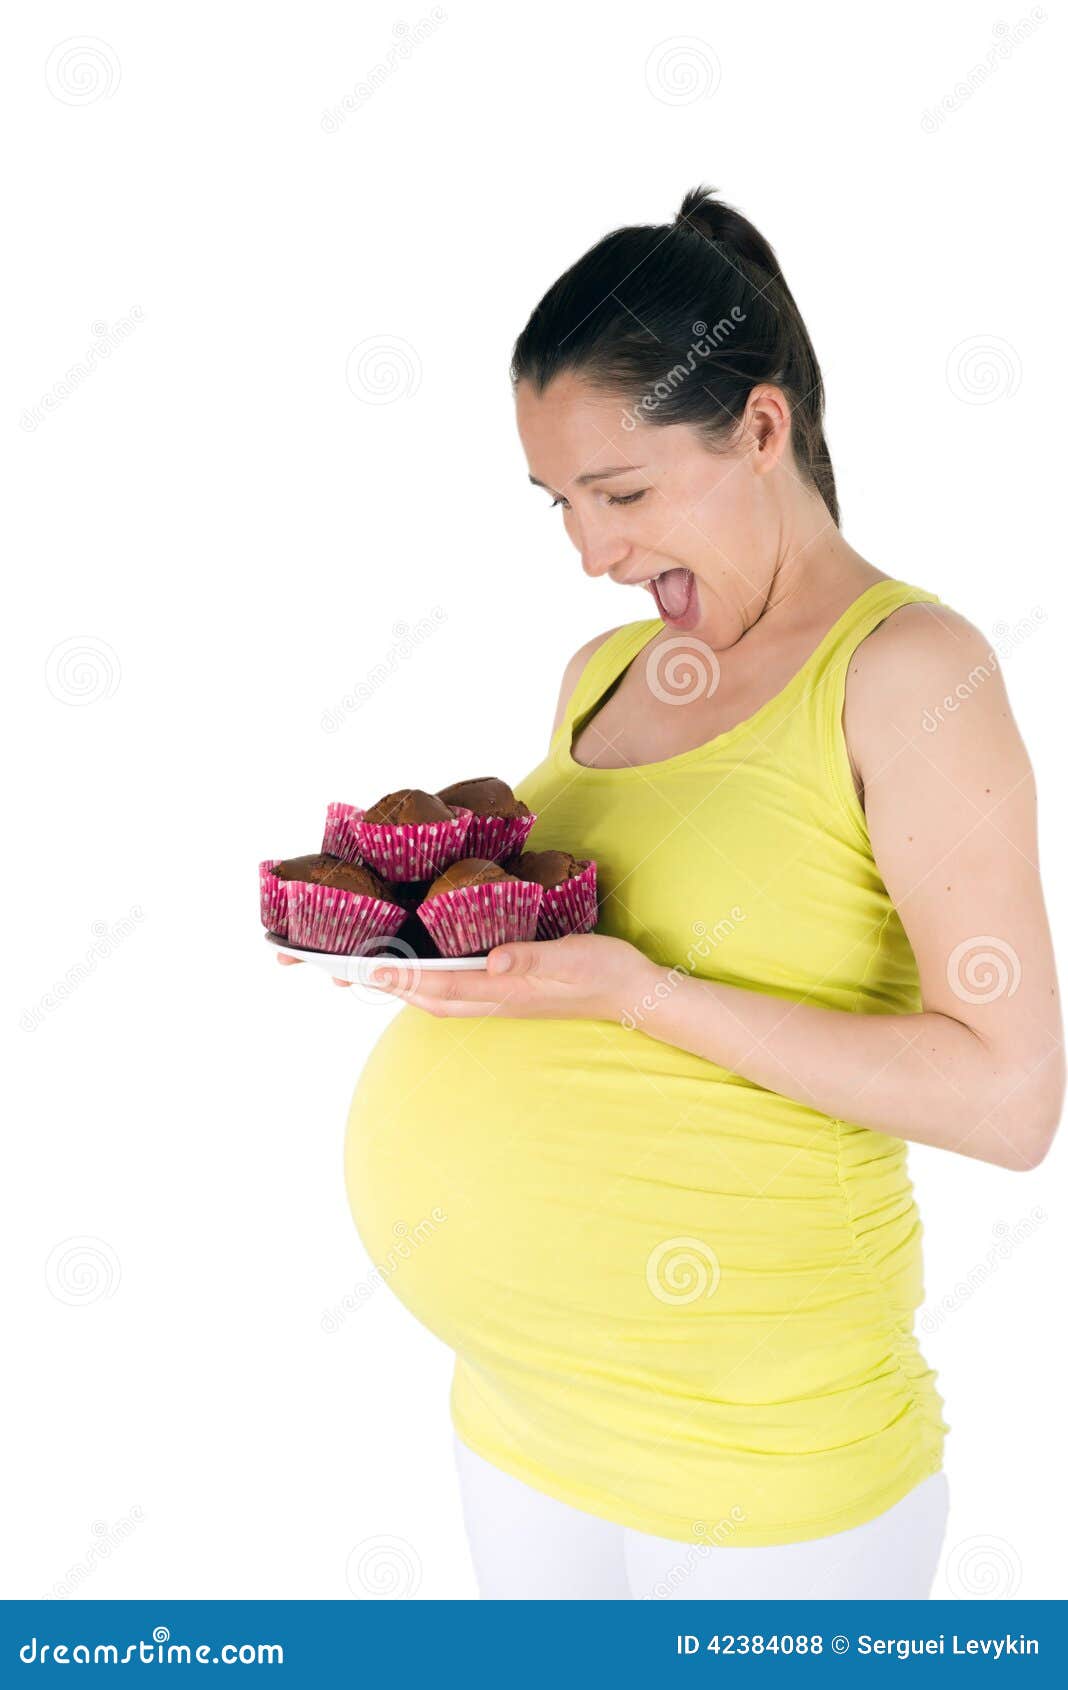 sweet cravings pregnancy